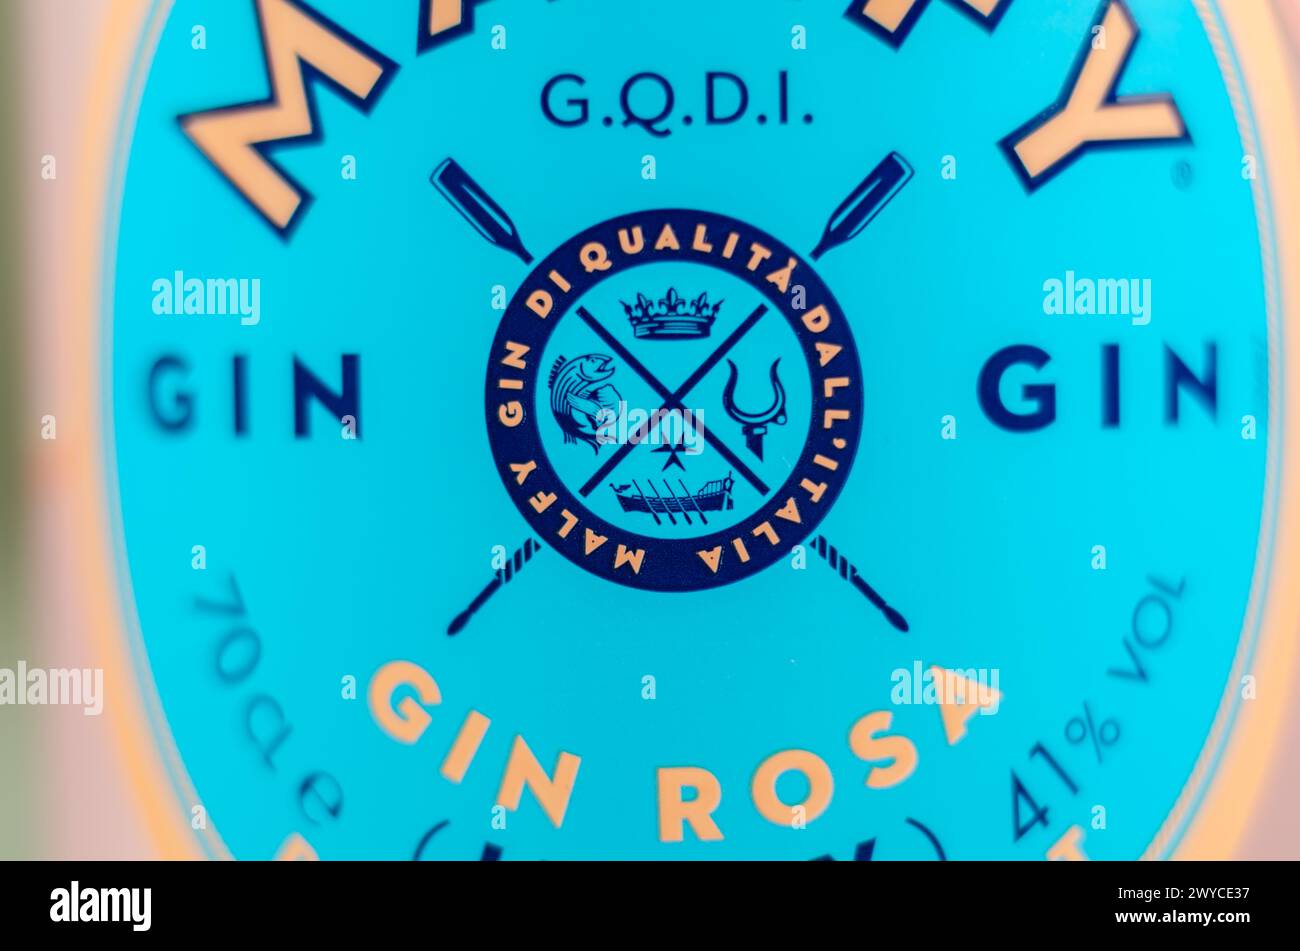 LONDRES, Royaume-Uni - 25 MARS 2024 Malfy Gin Rosa, un gin aromatisé inspiré par le style de vie amalfitain, incarne l'esprit de l'Italie comme la côte amalfitaine Banque D'Images